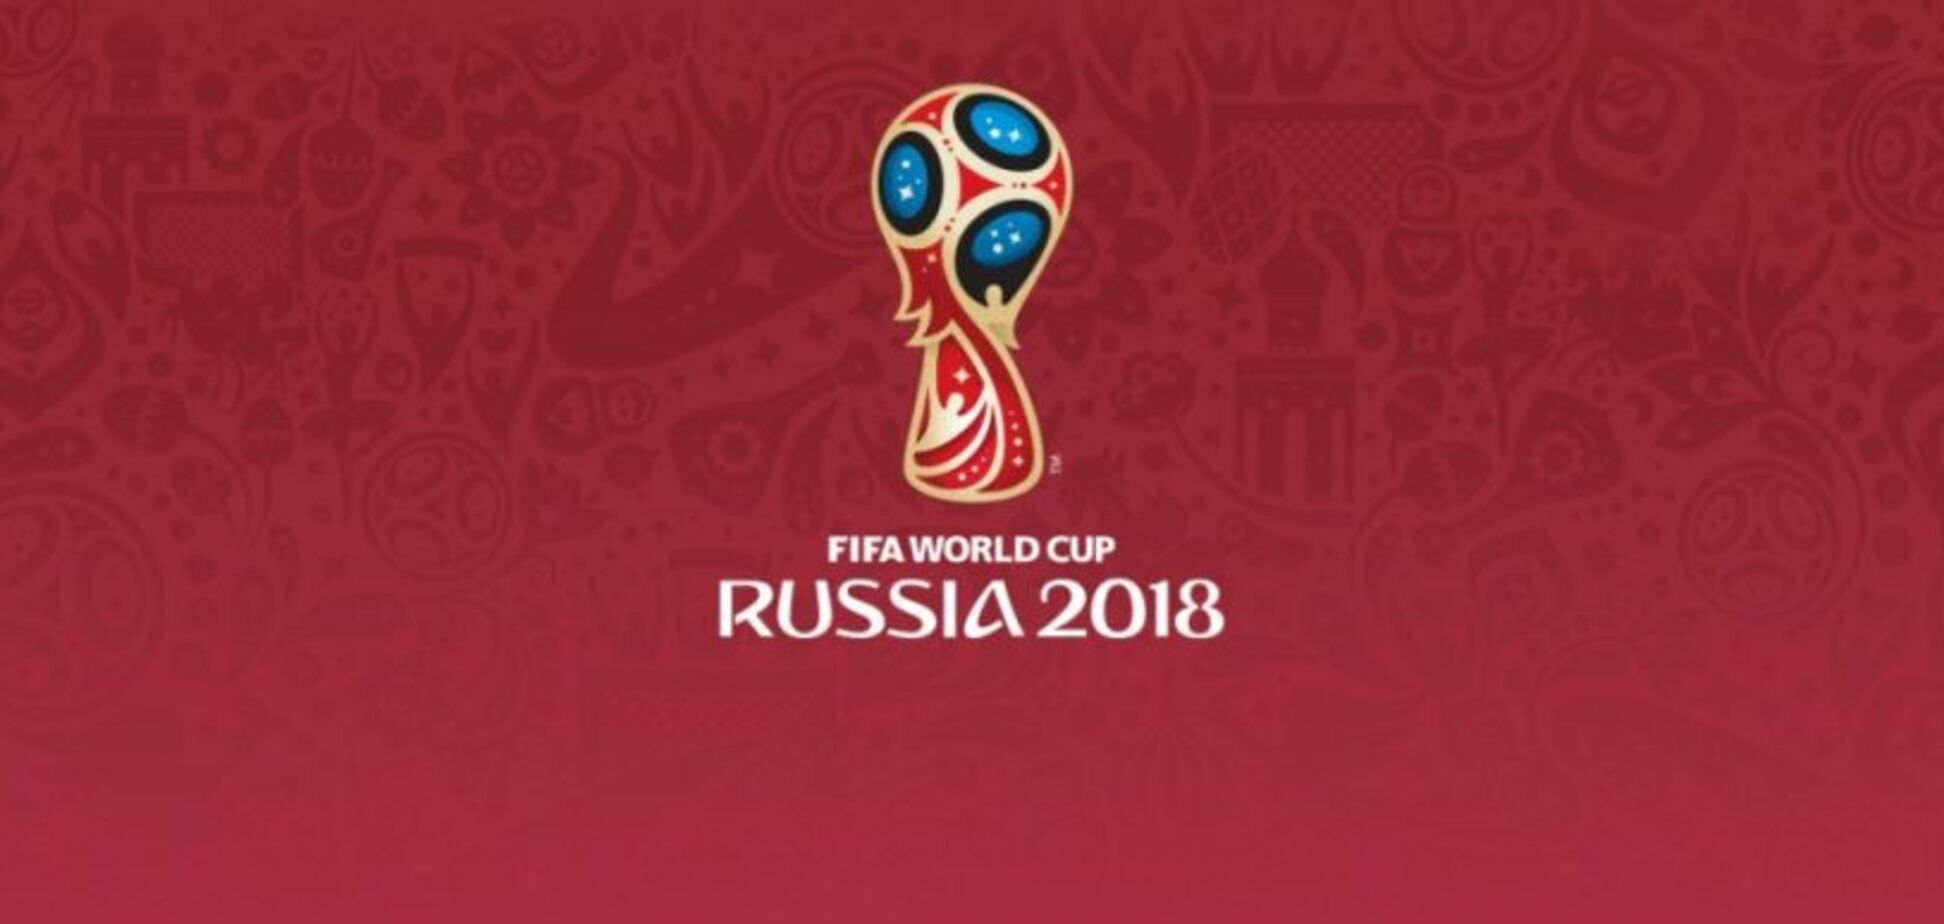 'Уродливый режим': ФИФА получила неординарное предложение по ЧМ-2018 в России